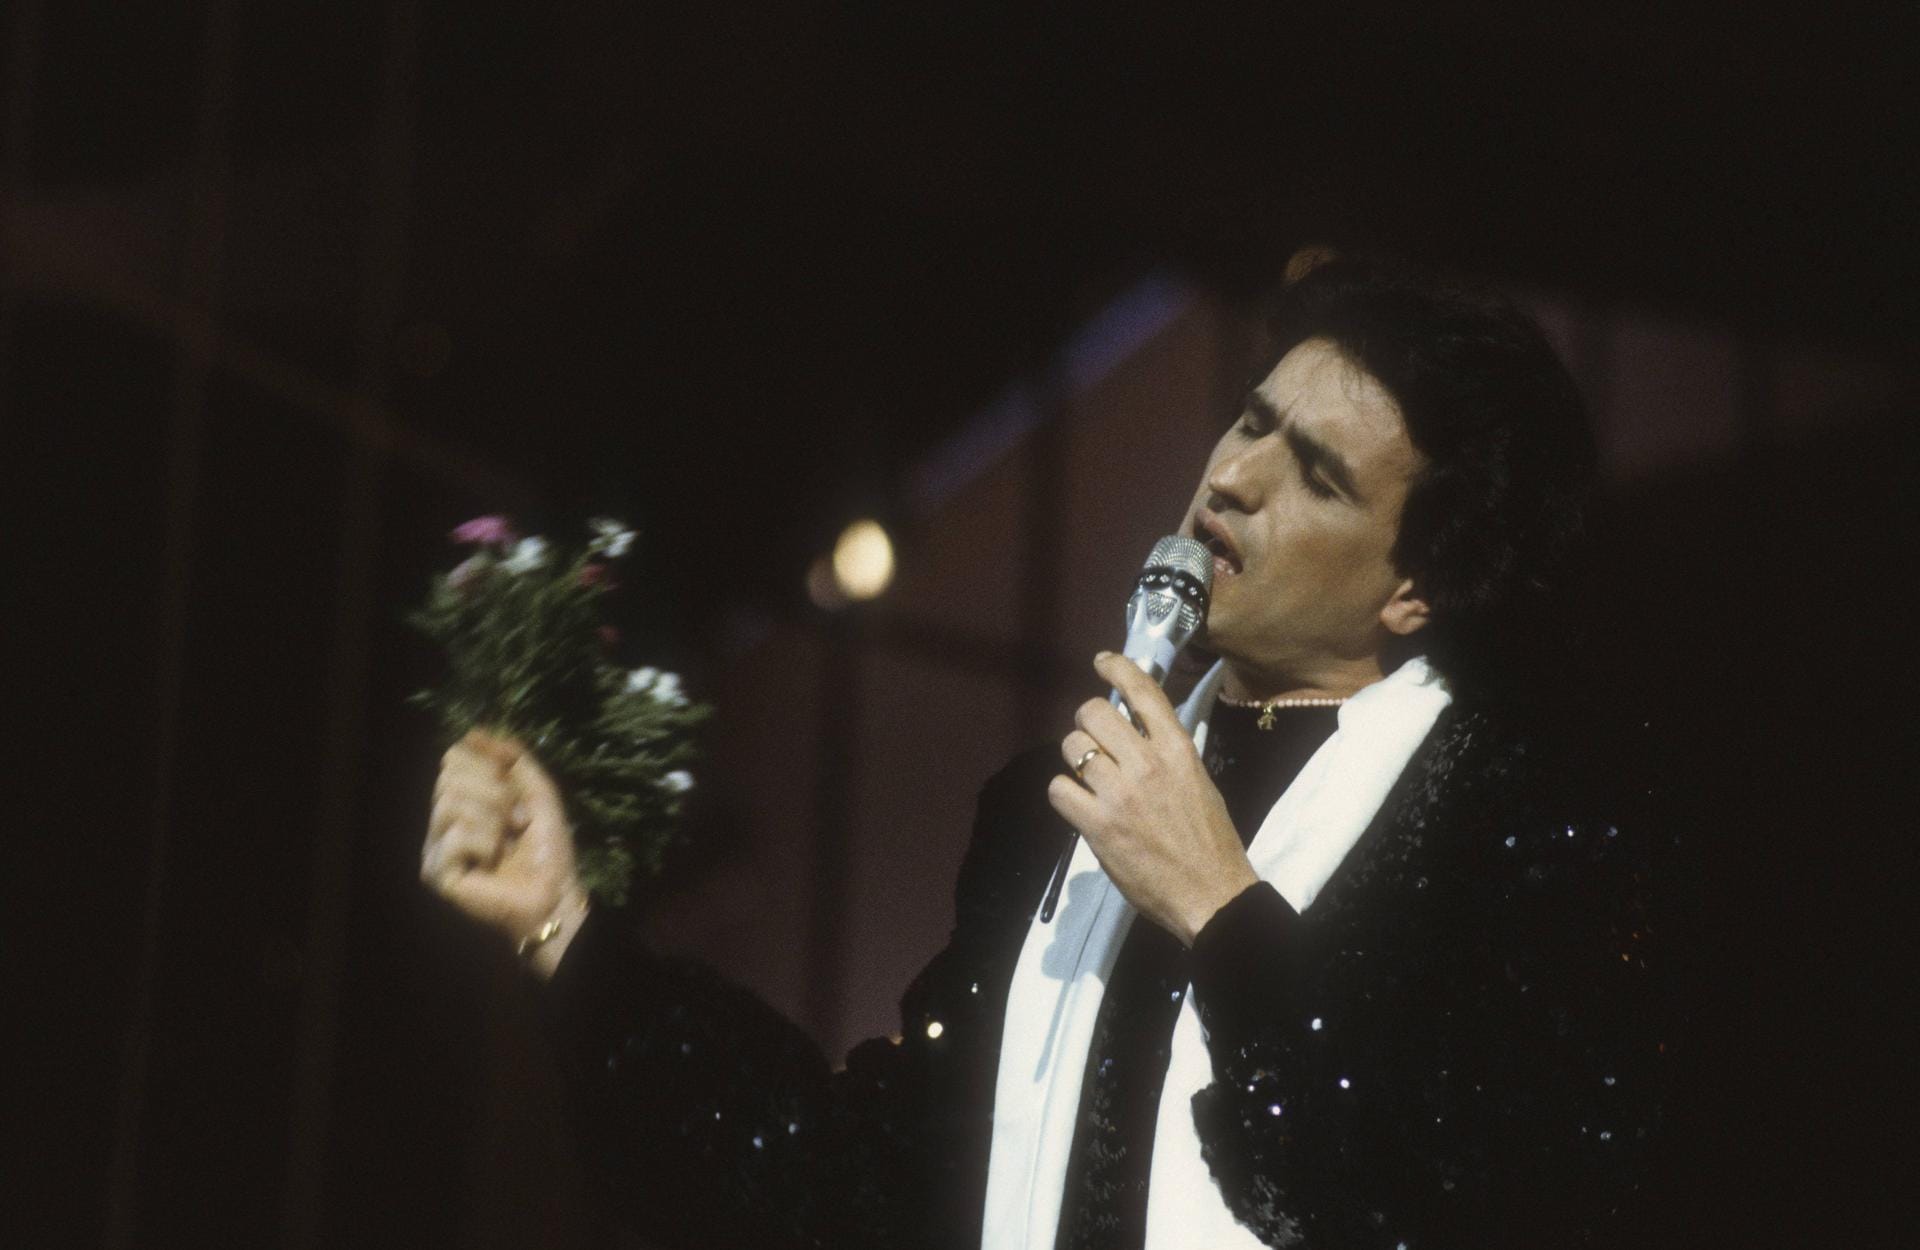 Der italienische Sänger und Songschreiber Toto Cutugno beeindruckte 1990 mit seinem Siegersong "Insieme 1992".